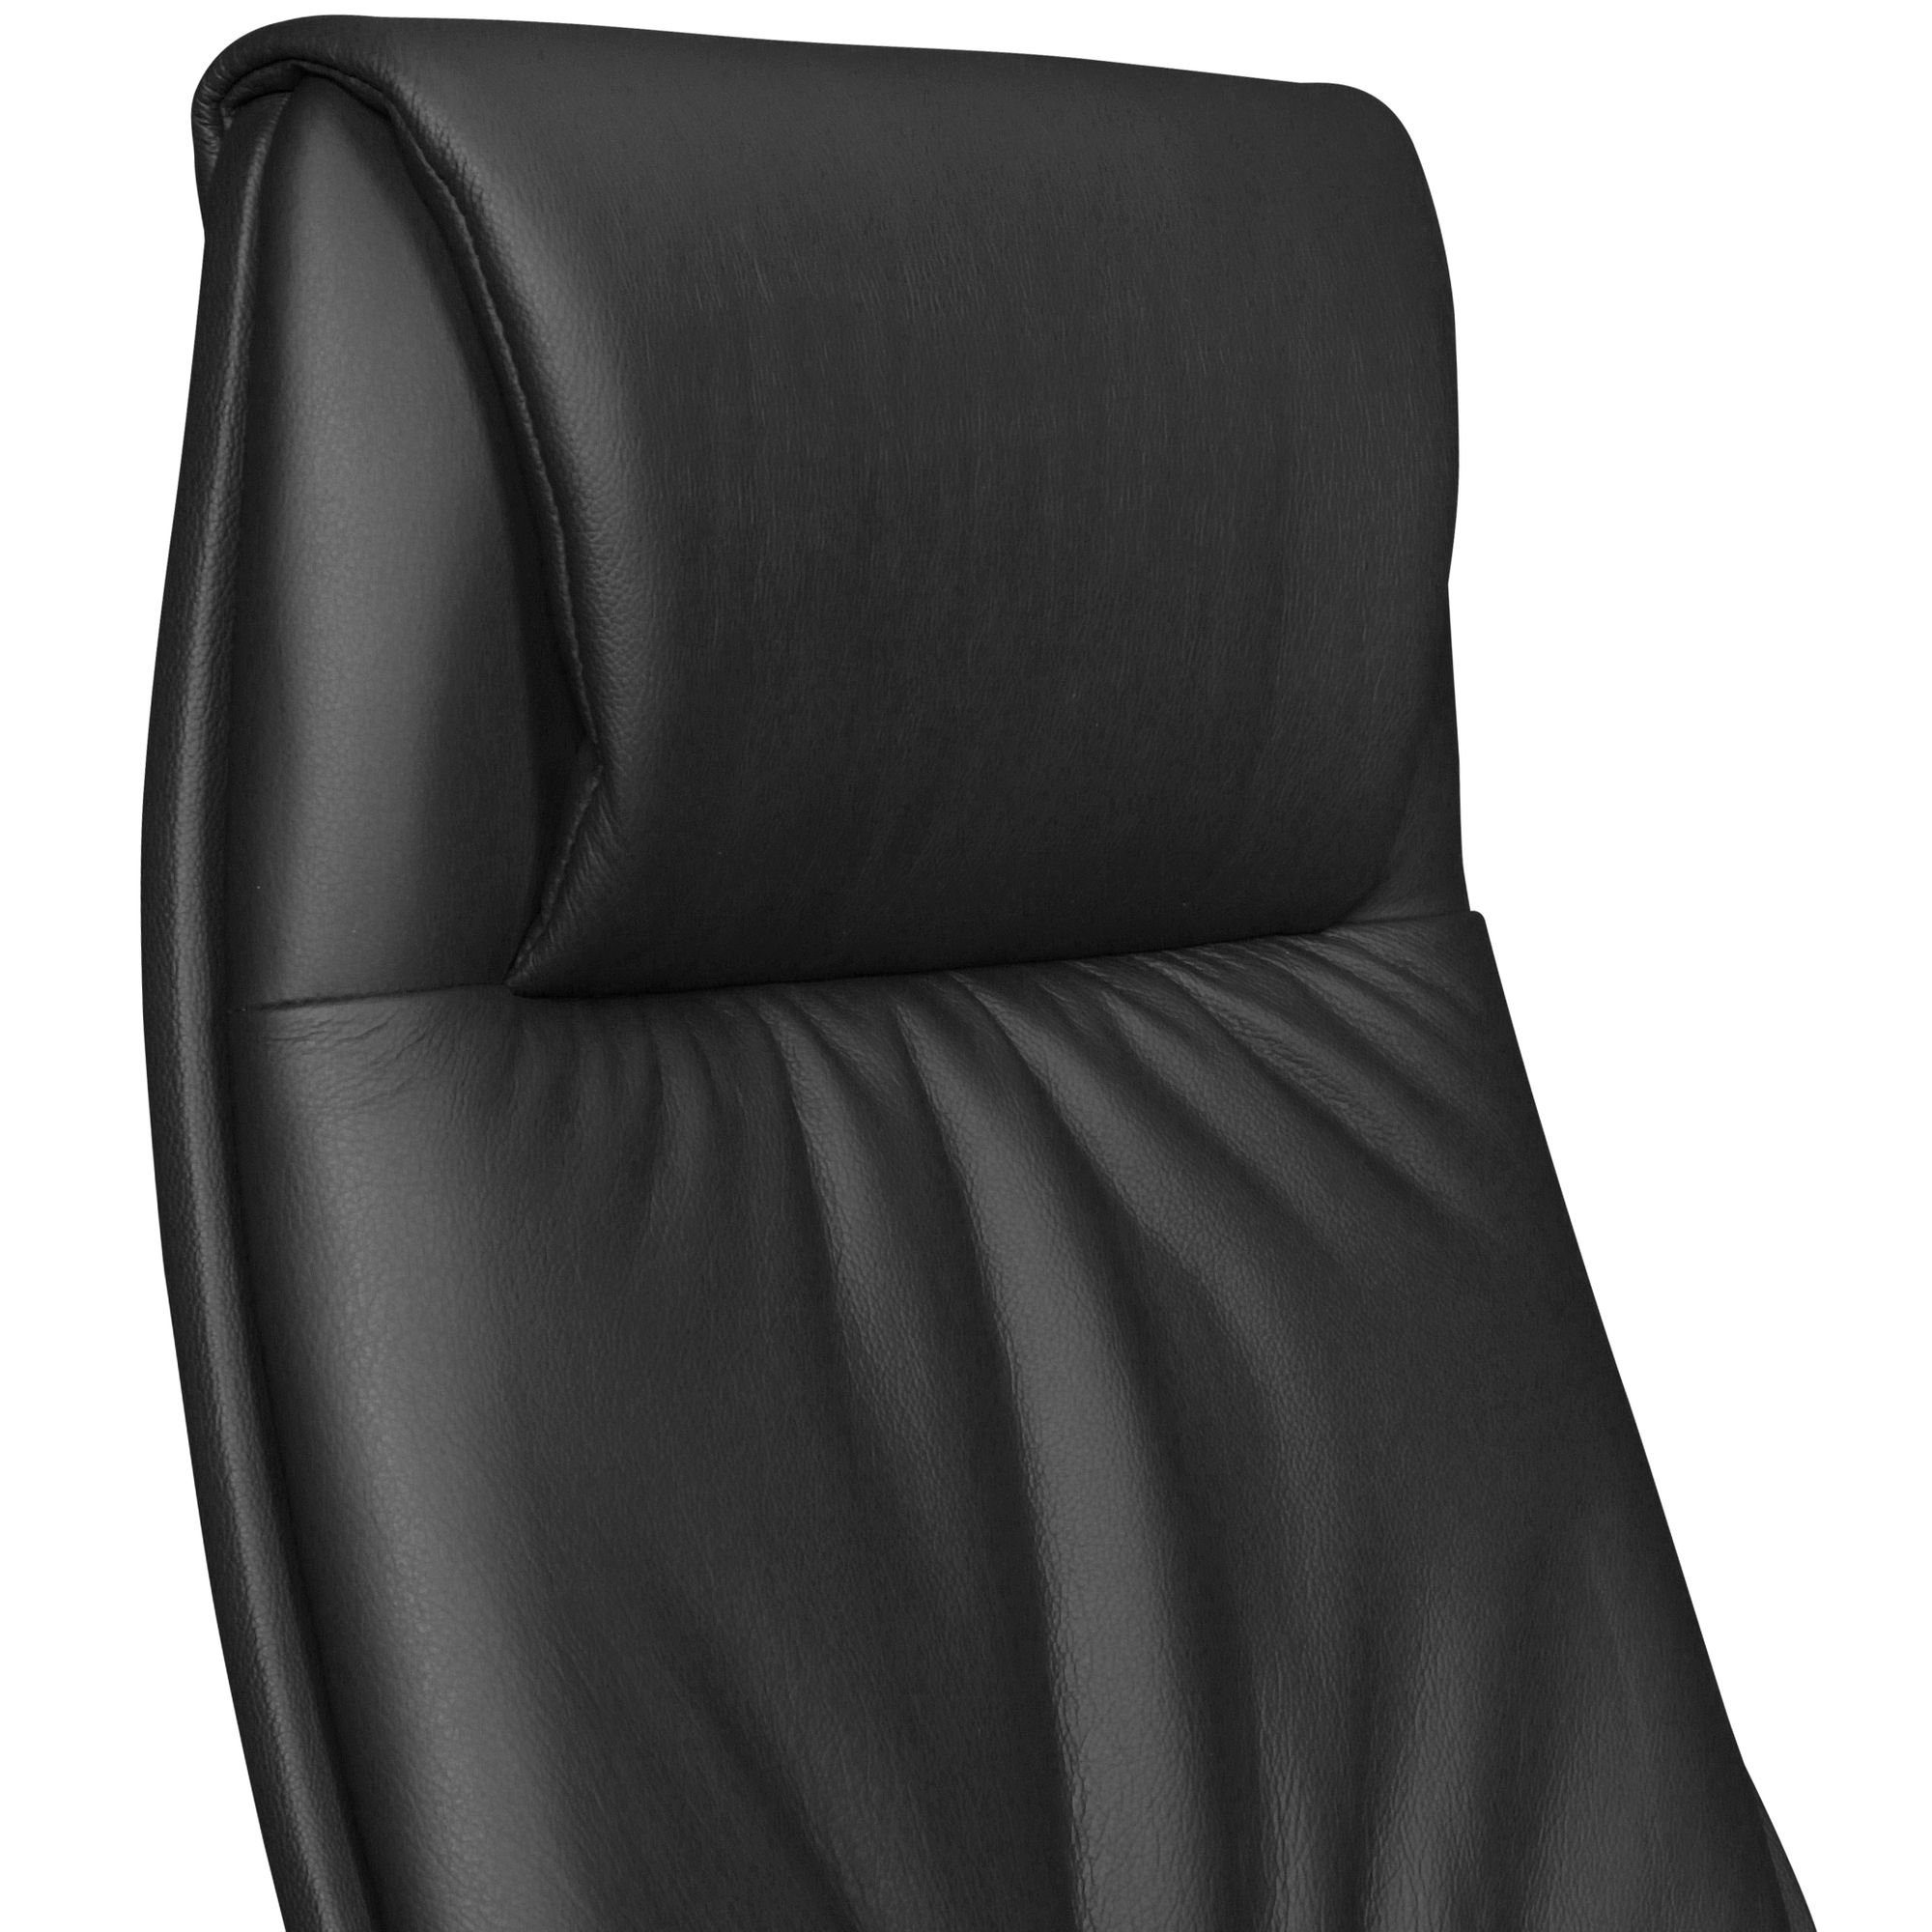 Schwarz (Echtleder 120kg), FINEBUY X-XL Chefsessel Schreibtischstuhl Bürostuhl Schwarz Kopfstütze | SuVa1069_1 Schwarz Chefsessel Synchronmechanik